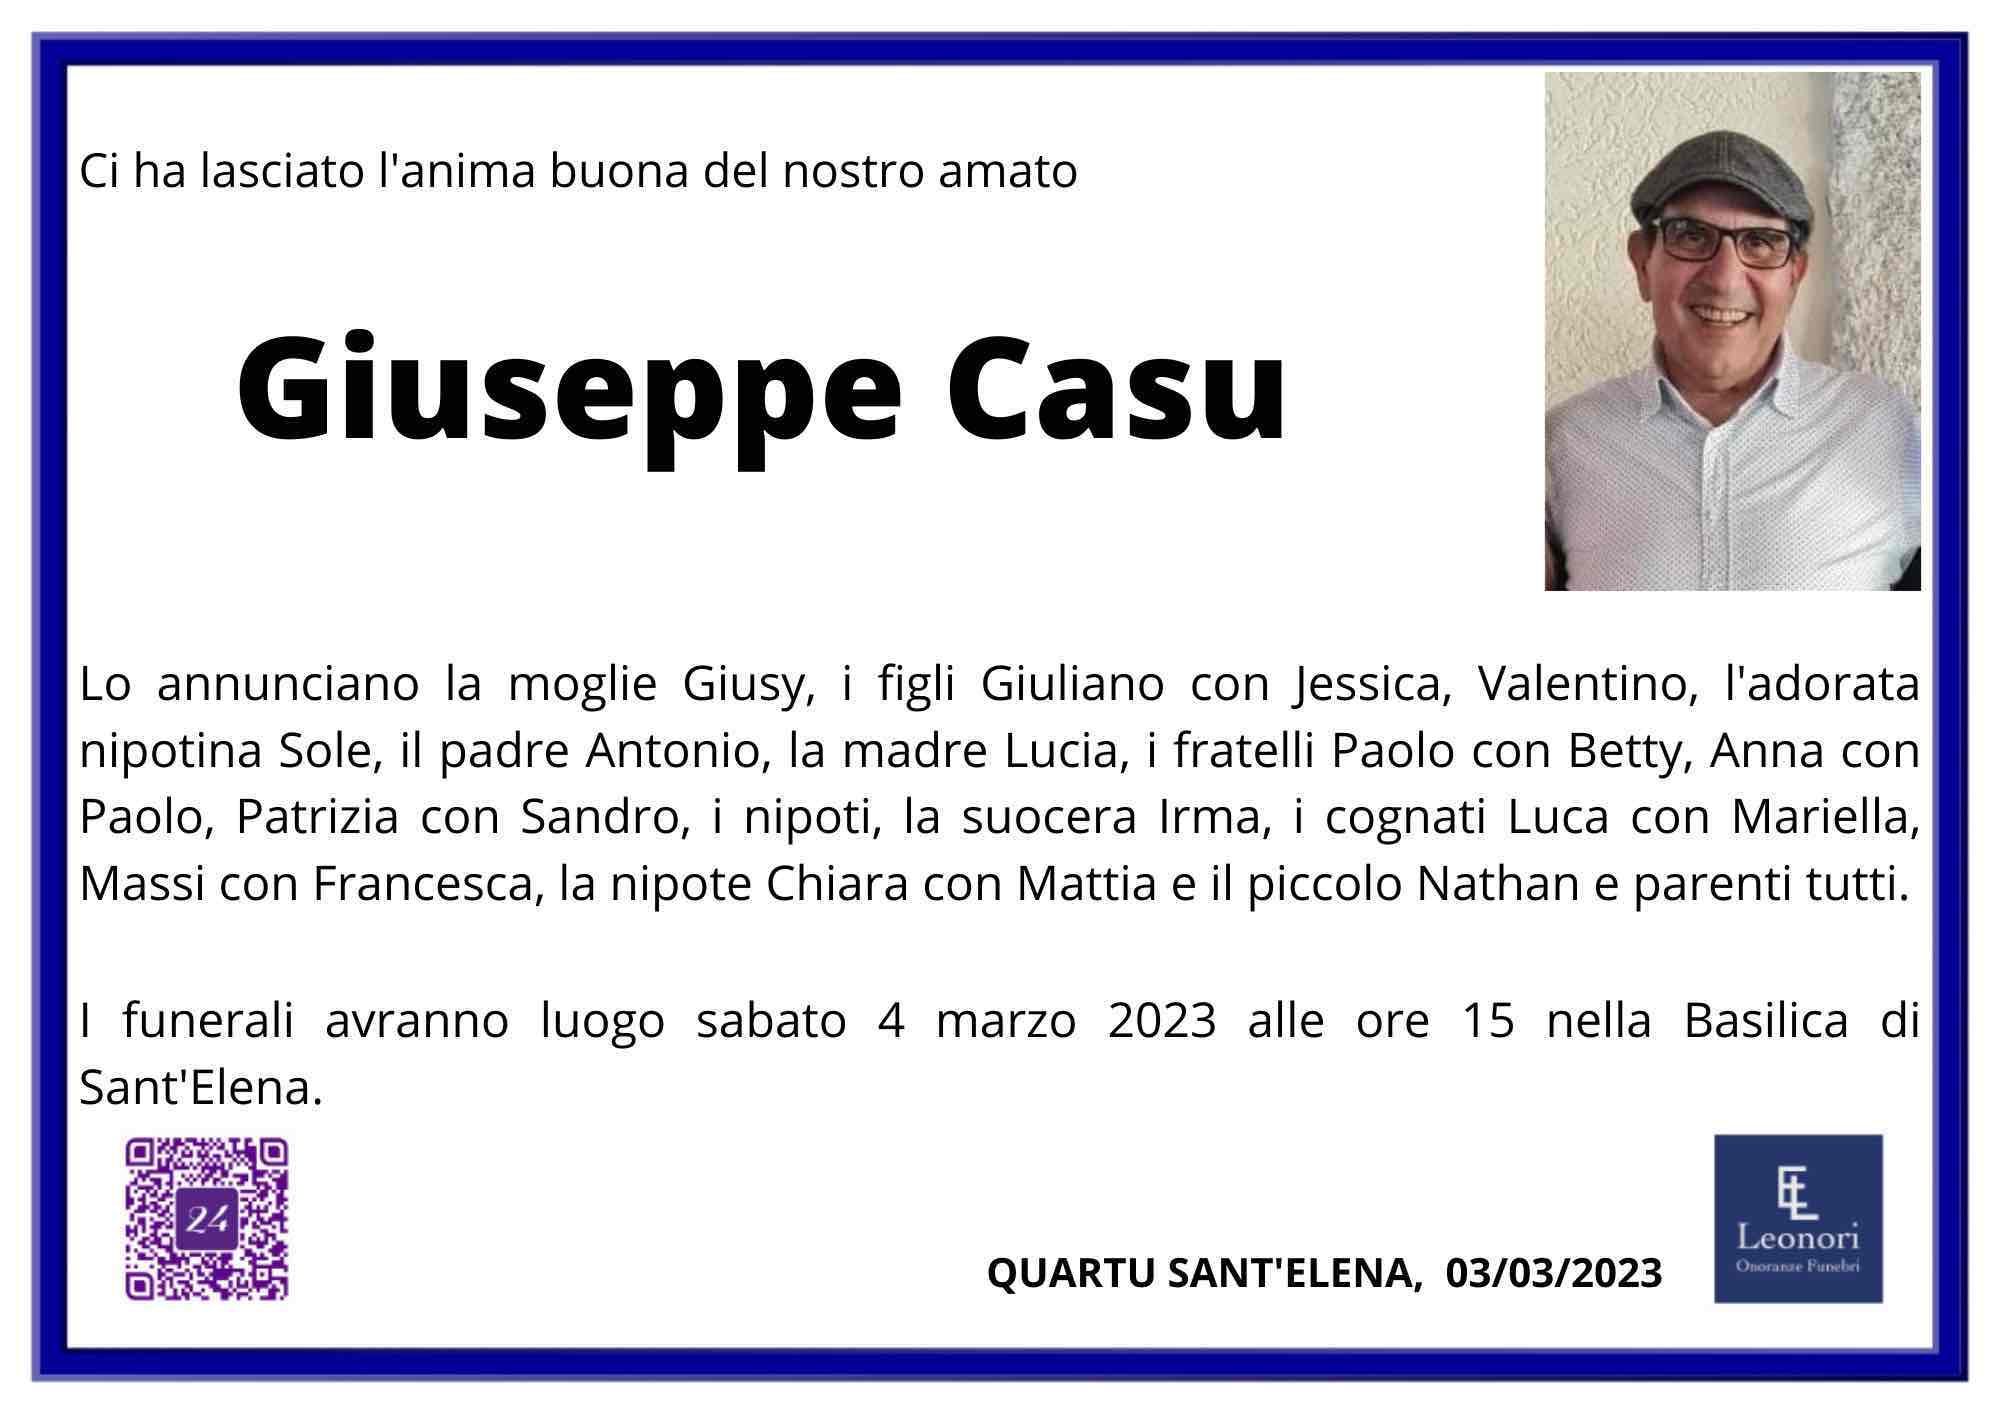 Giuseppe Casu